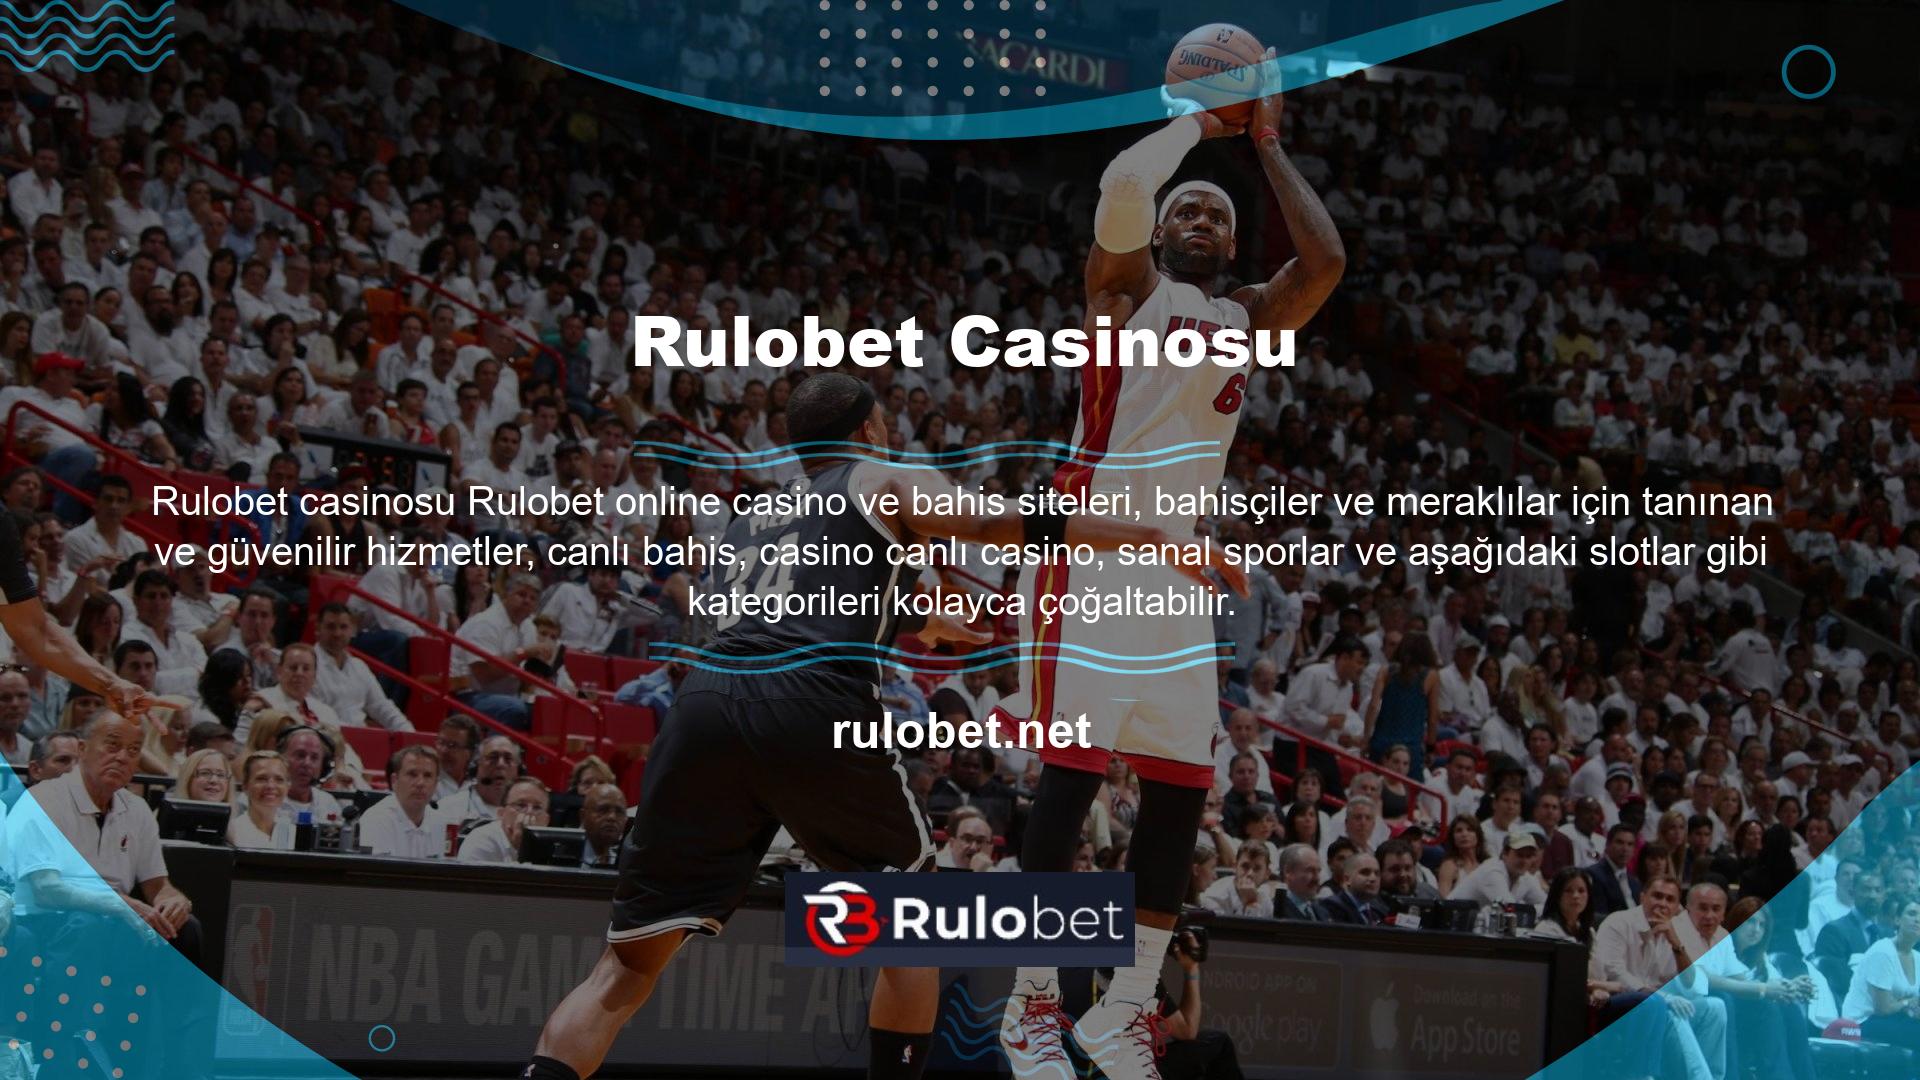 Rulobet online casino ve bahis sitesinin canlı bahis ve canlı casino dahil tüm hizmetleri casino dayalıdır